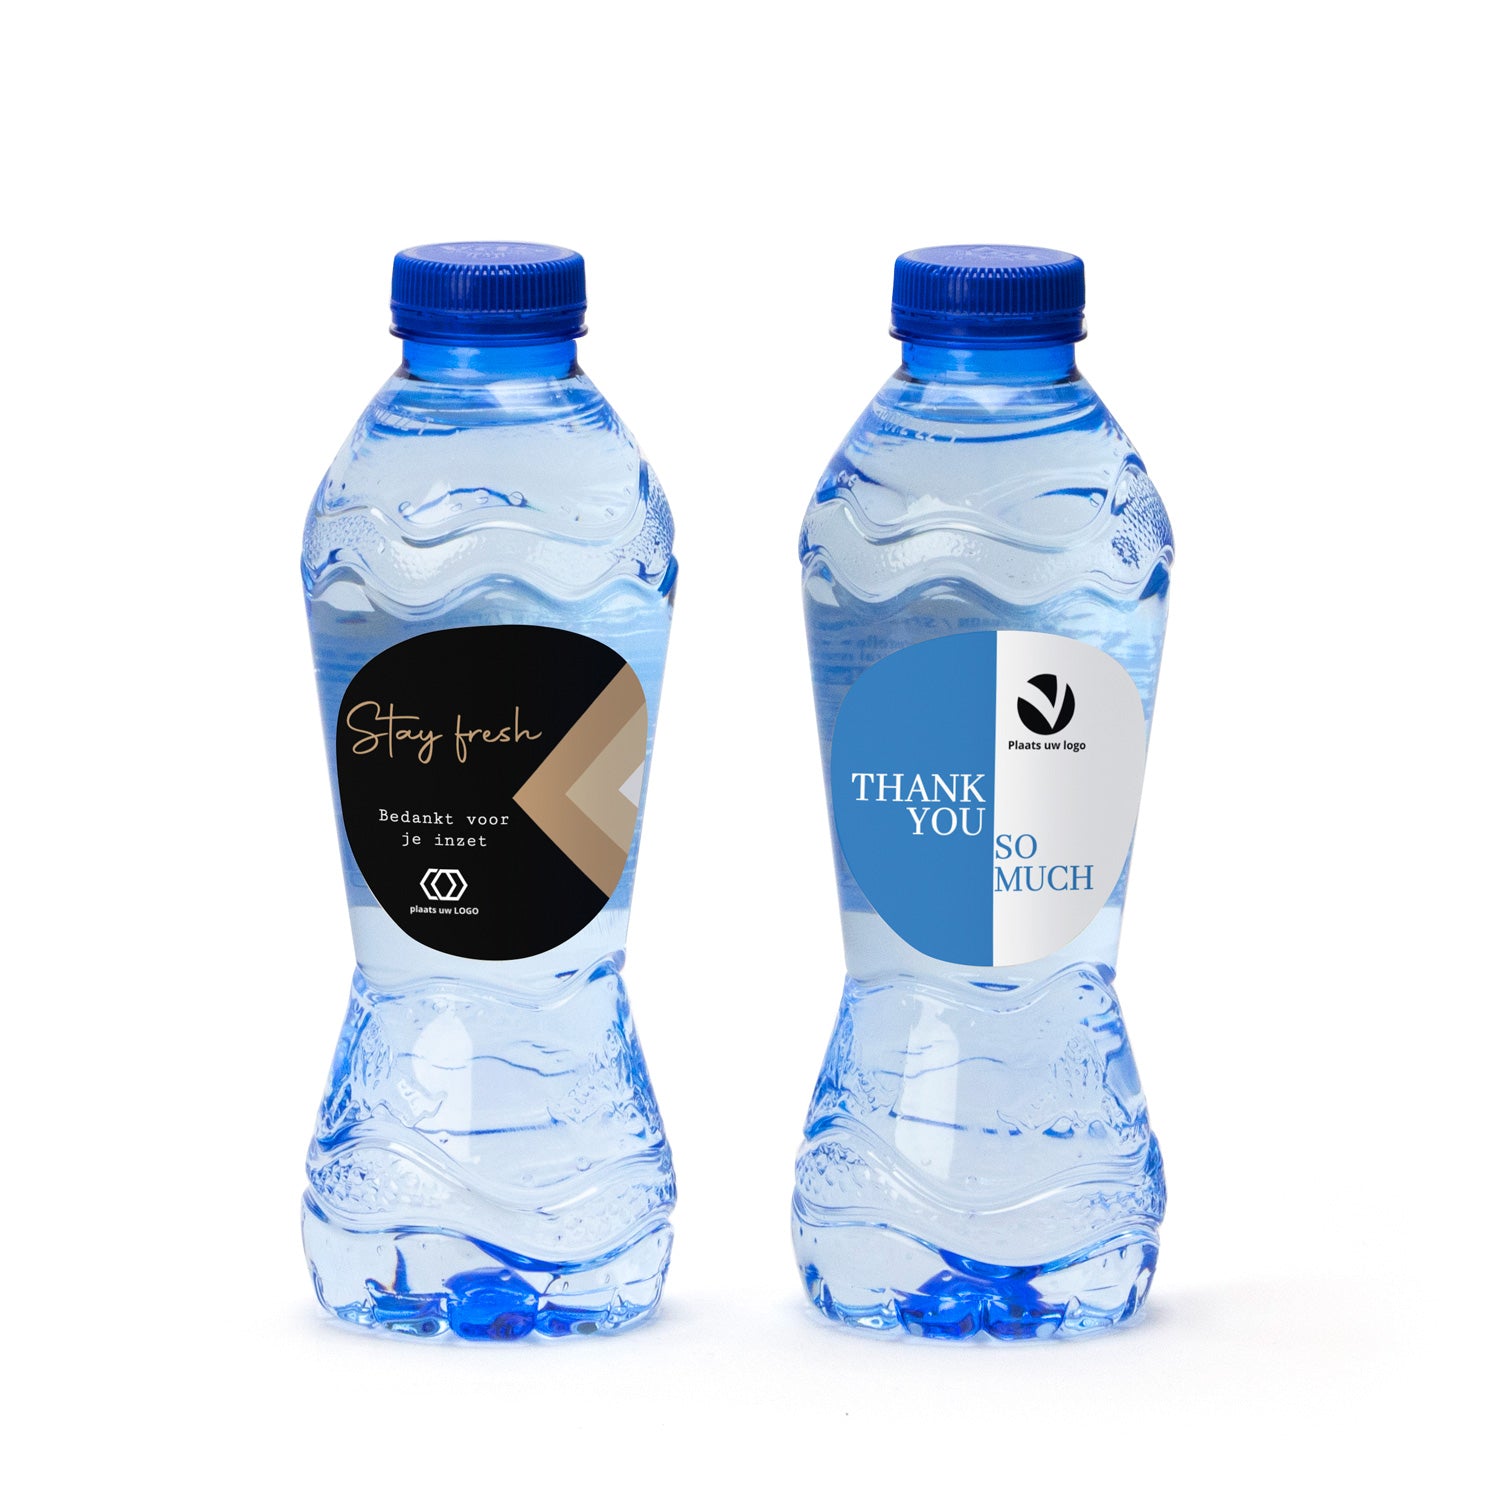 Flesje water met eigen etiket - Zakelijk - Bedankjes.nl